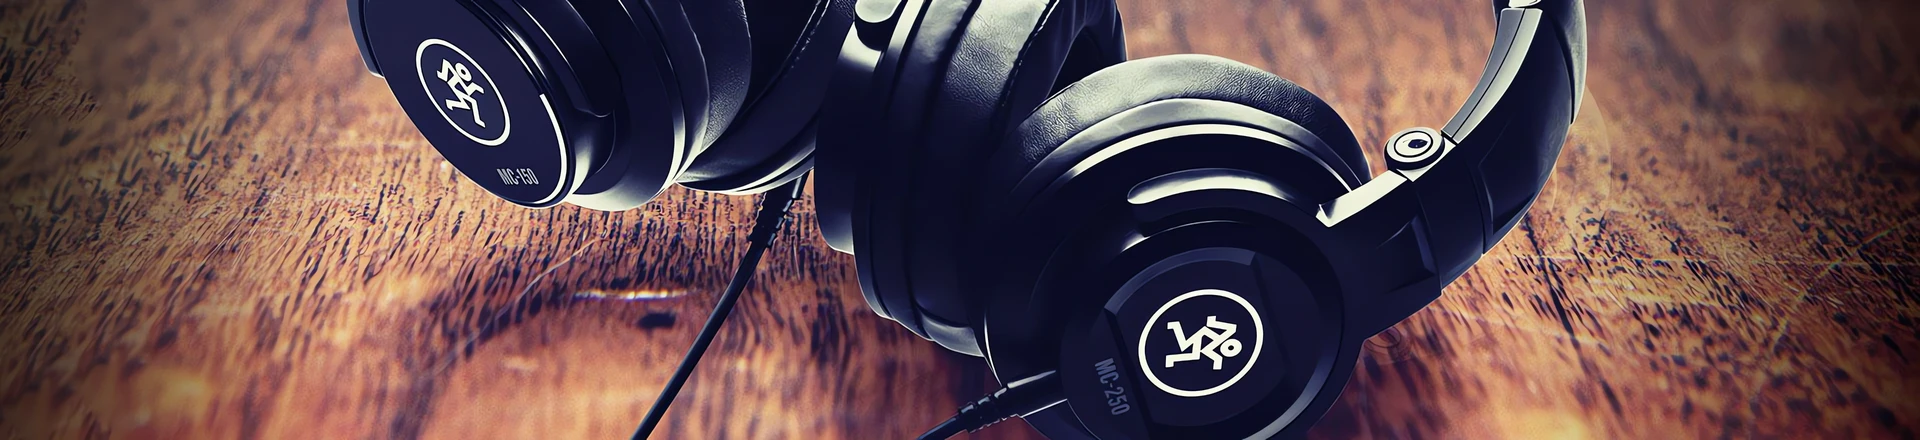 MC Series i CR-Buds - Nowe słuchawki i zestawy douszne od Mackie